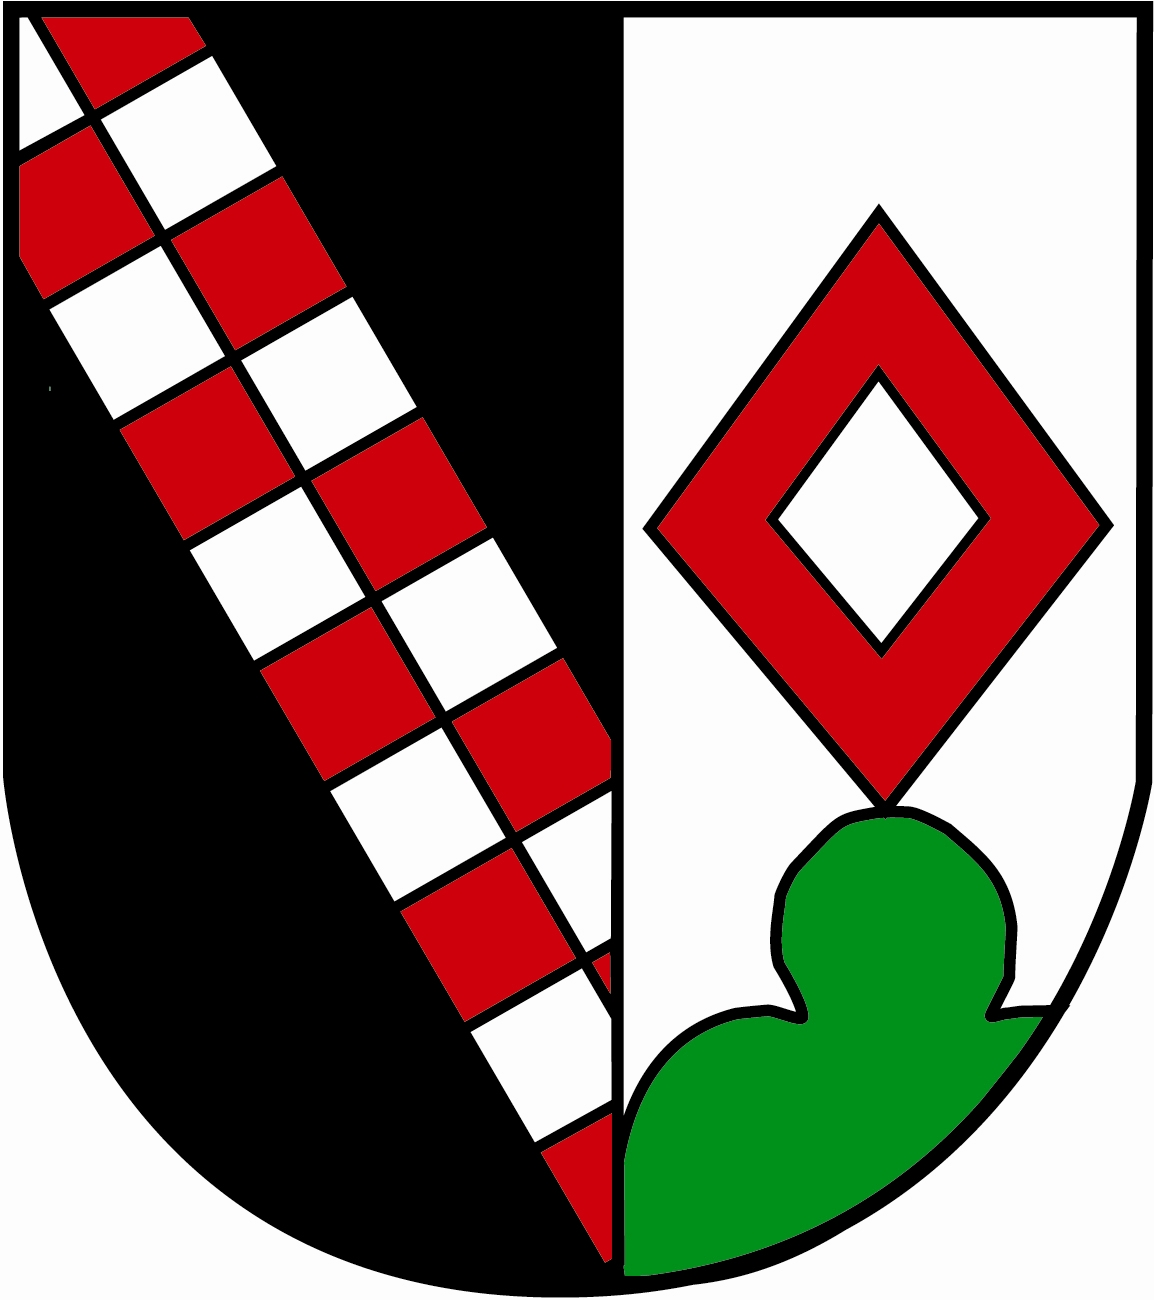 Wappen Wald